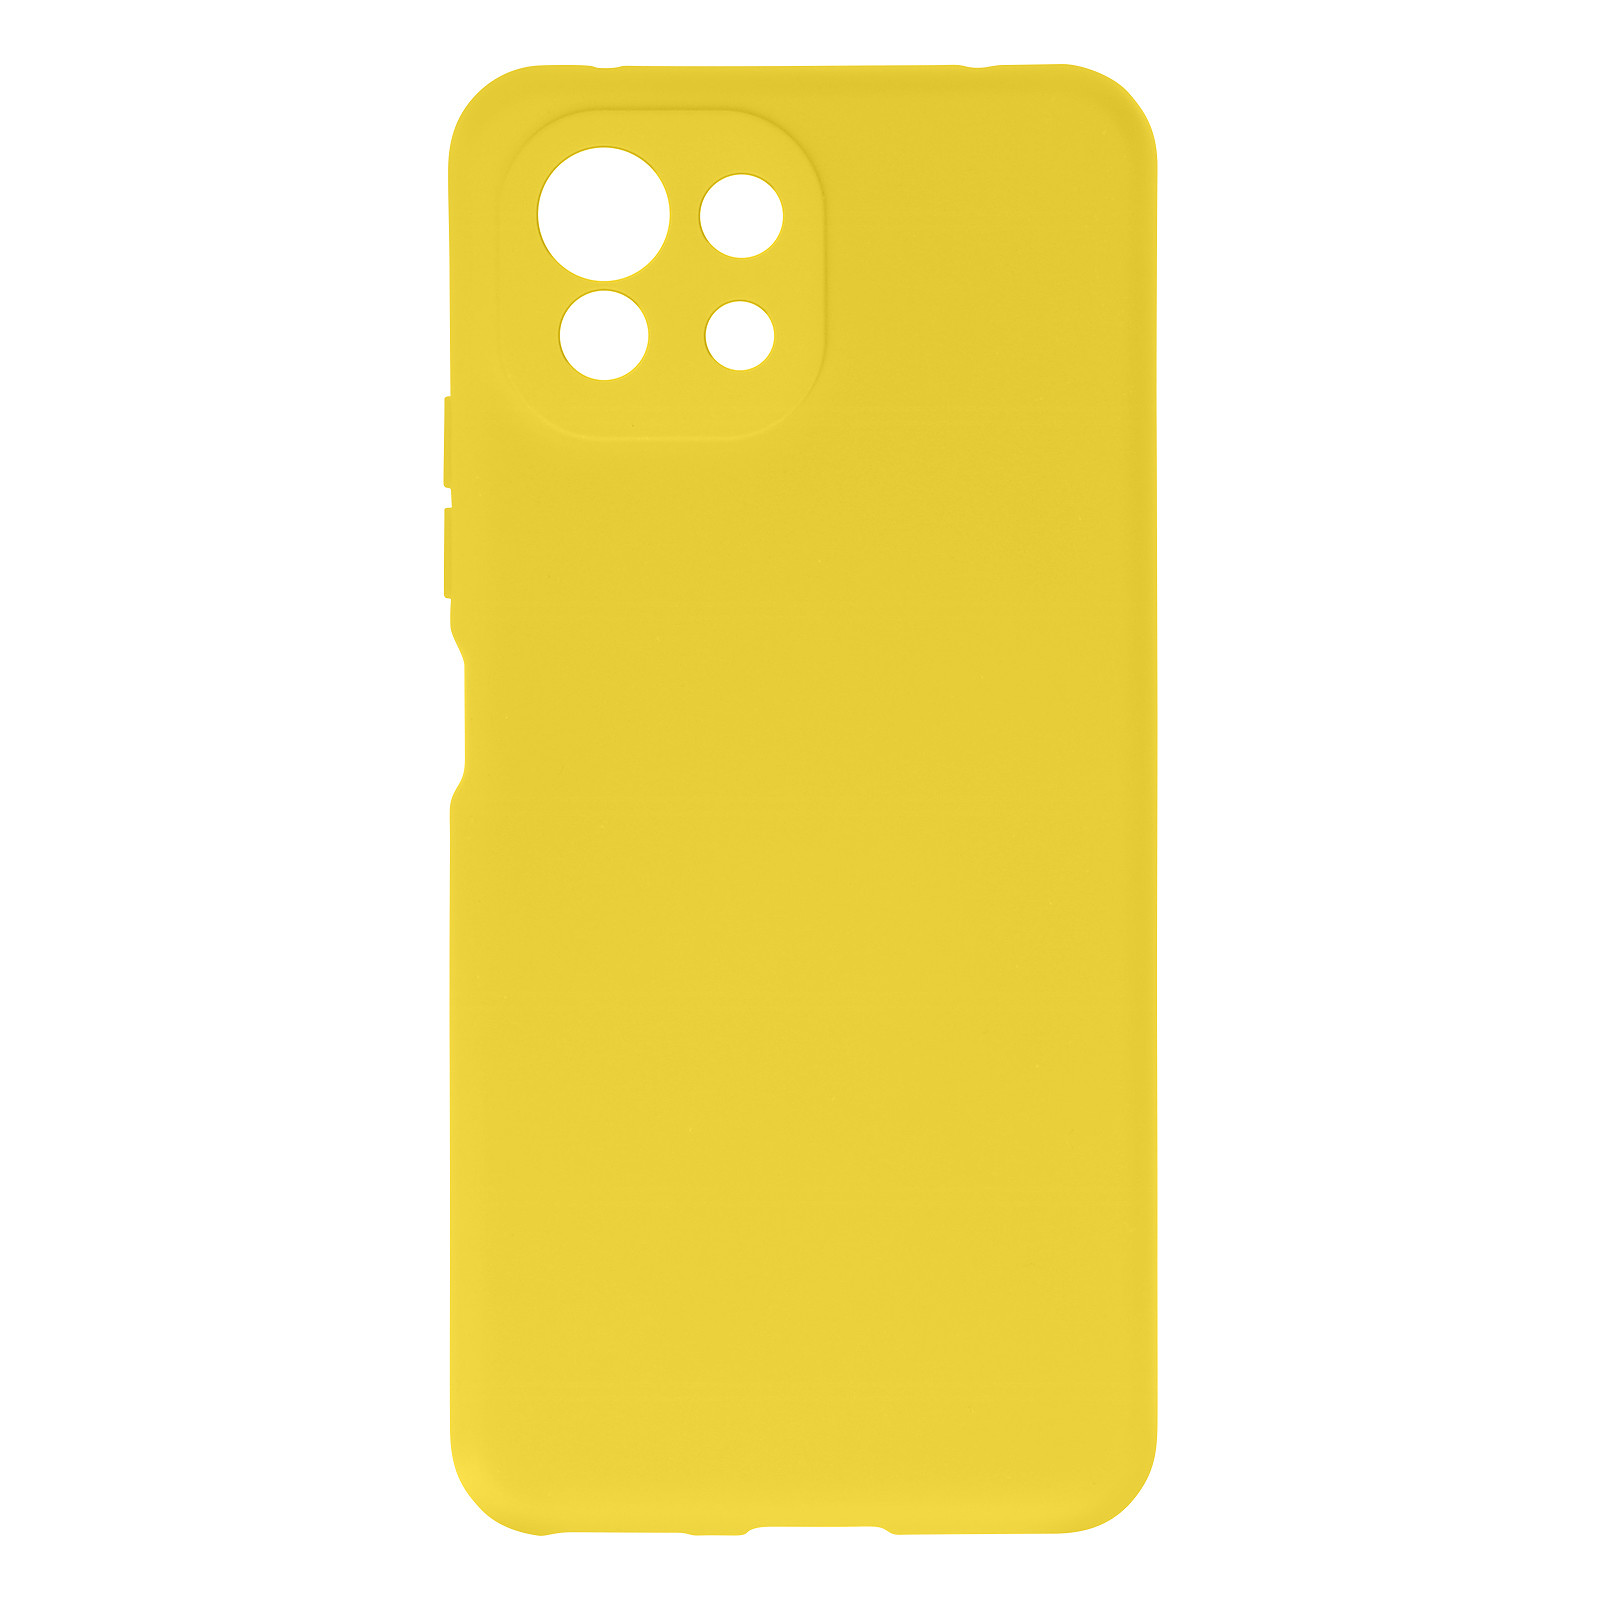 Avizar Coque pour Xiaomi Mi 11 Lite Silicone Semi-rigide Finition Soft Touch Fine jaune - Coque telephone Avizar